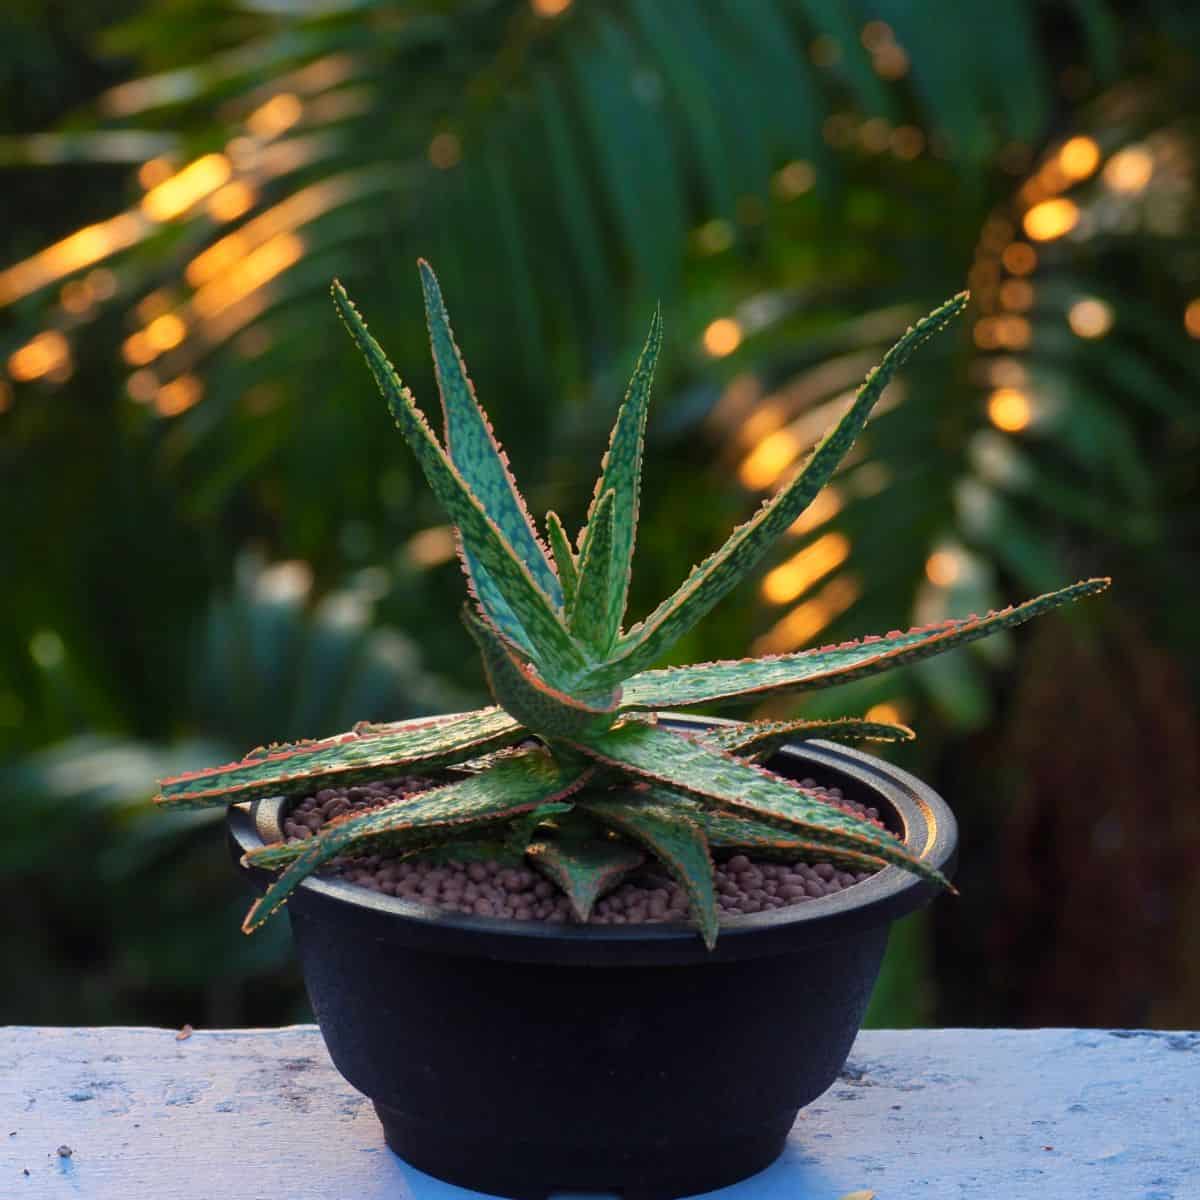 Aloe vera hybrid growing in a black pot.